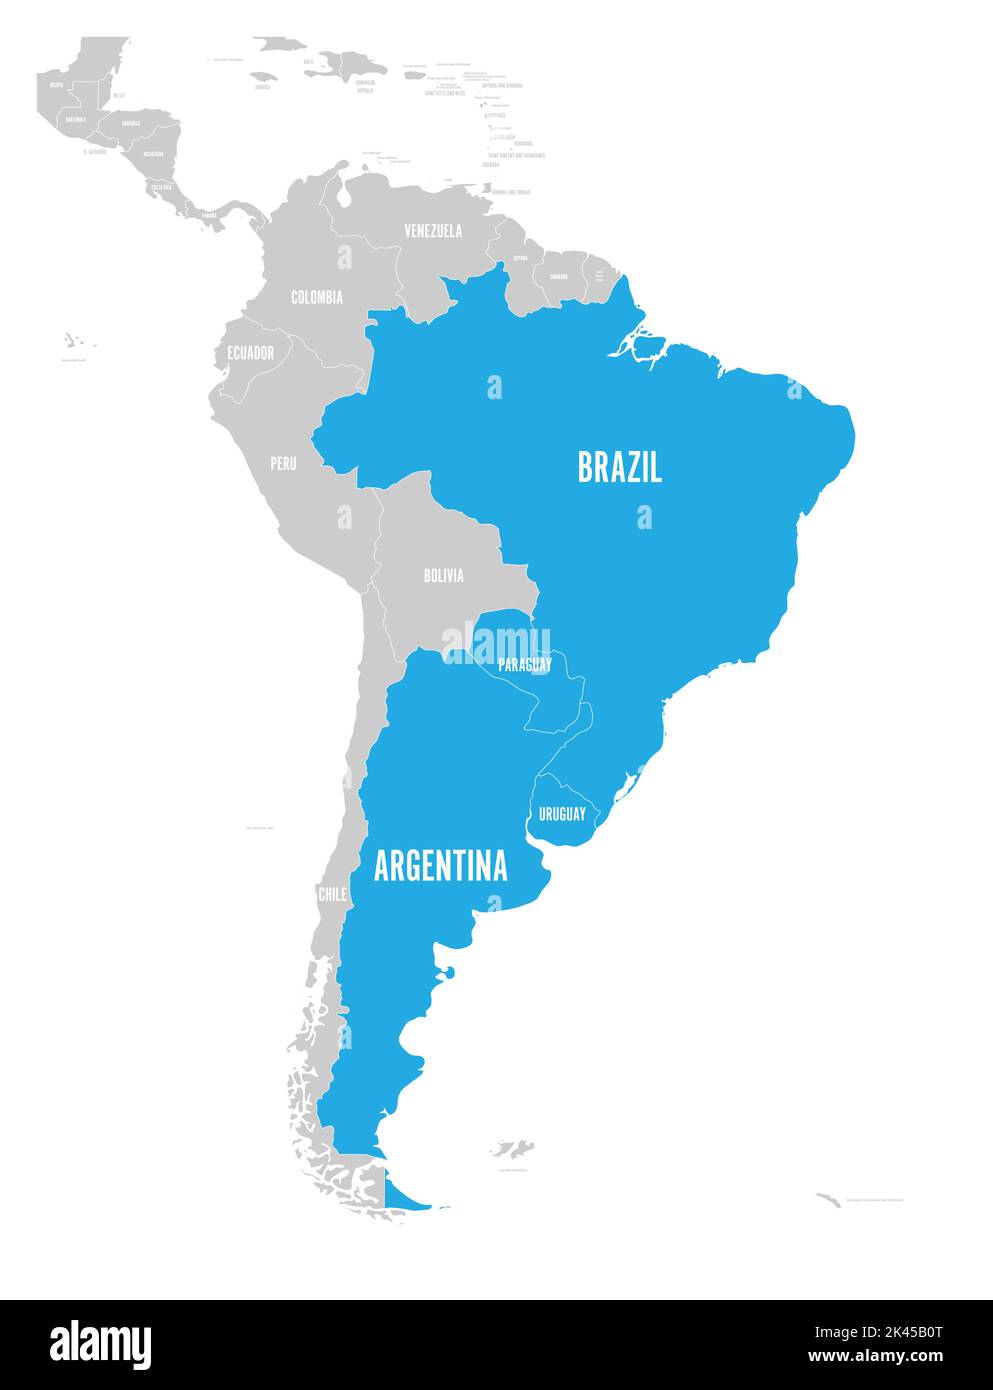 Karte der Regionen DES MERCOSUR. südamerikanischer Handelsverband. Blau markierte Mitgliedsstaaten Brasilien, Paraguay, Uruguay und Argetina. Seit Dezember Stock Vektor